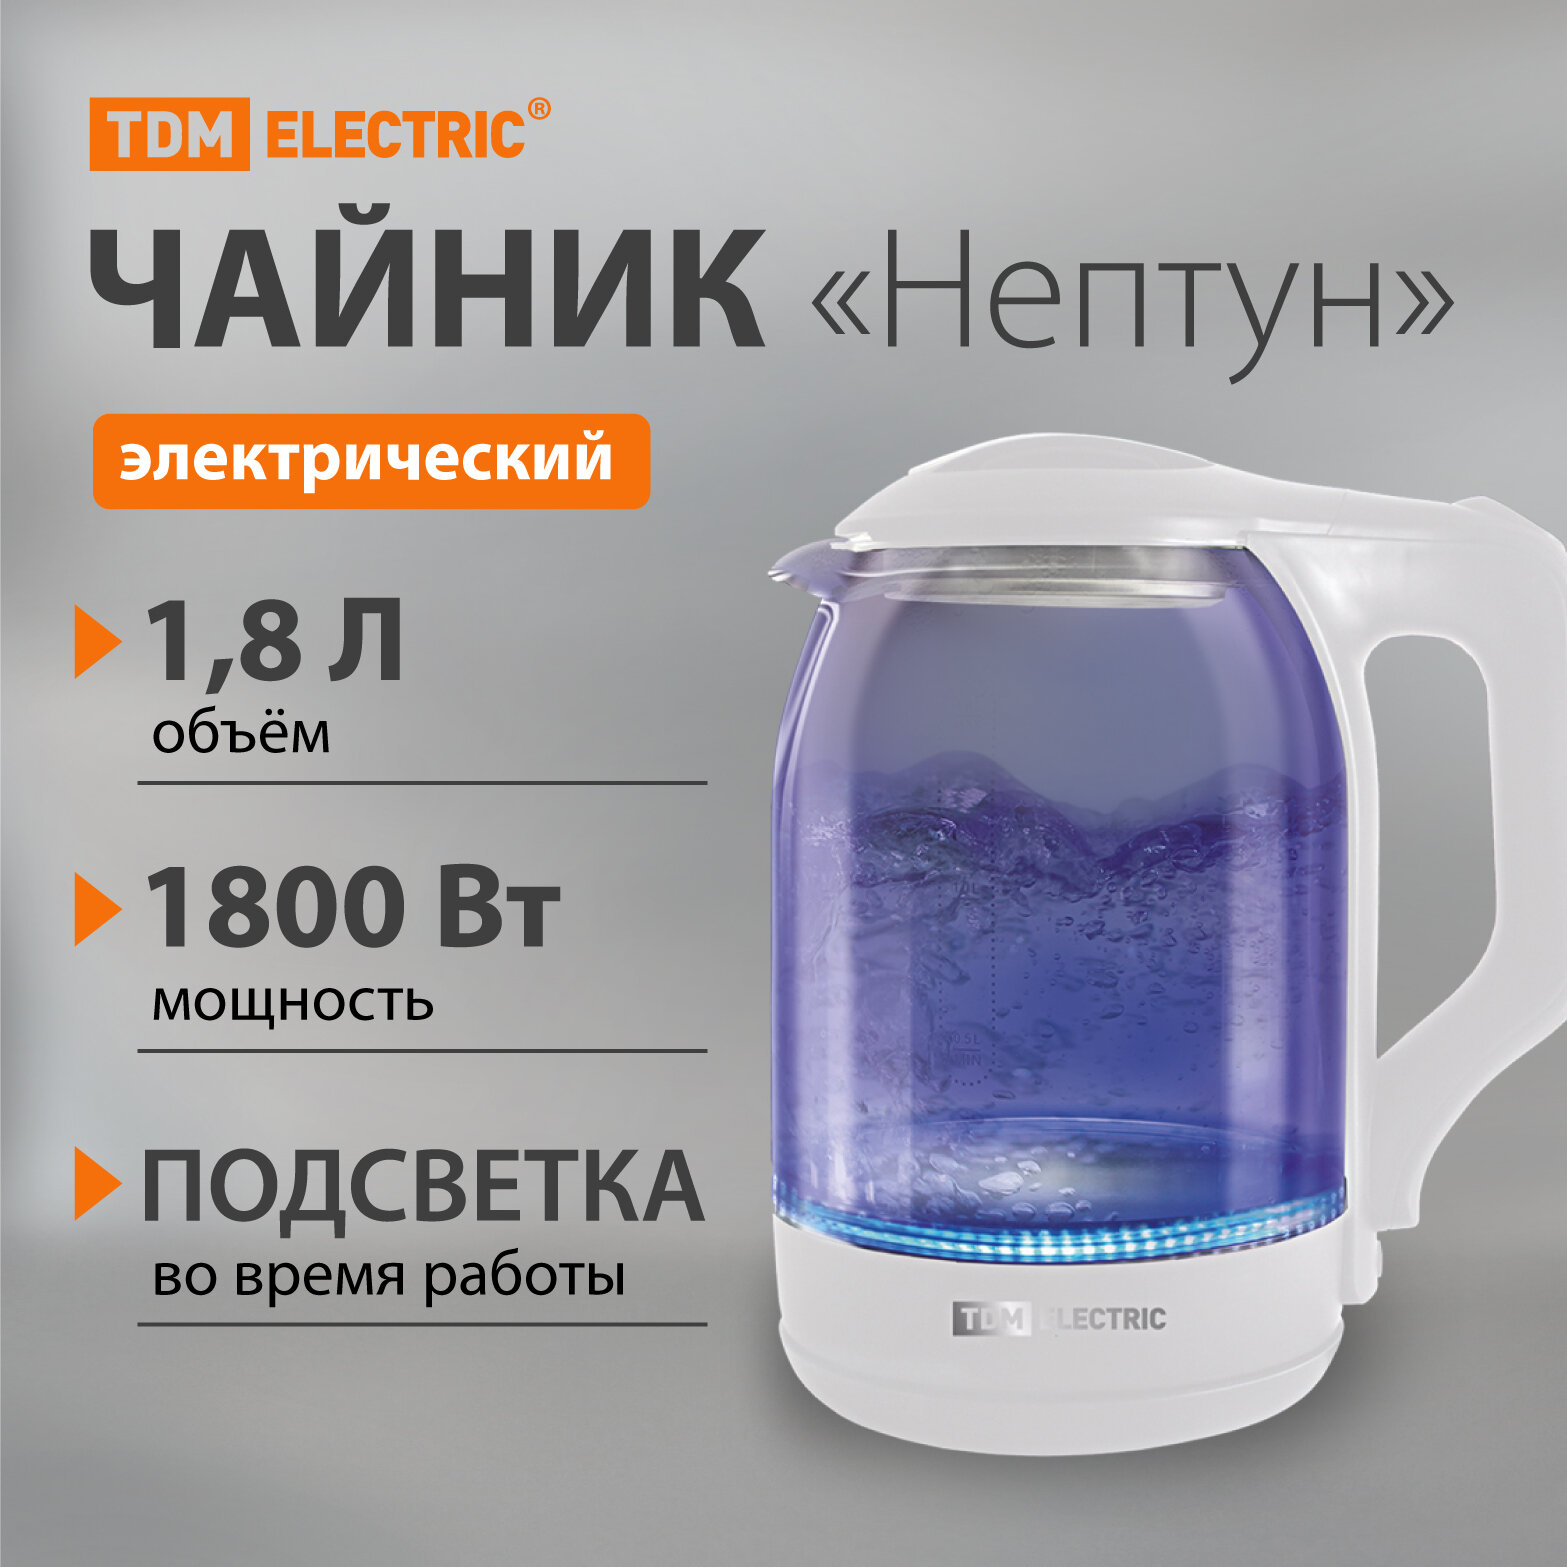 Электрический чайник "Нептун", стекло, 1,8 л, 1800 Вт, белый, TDM